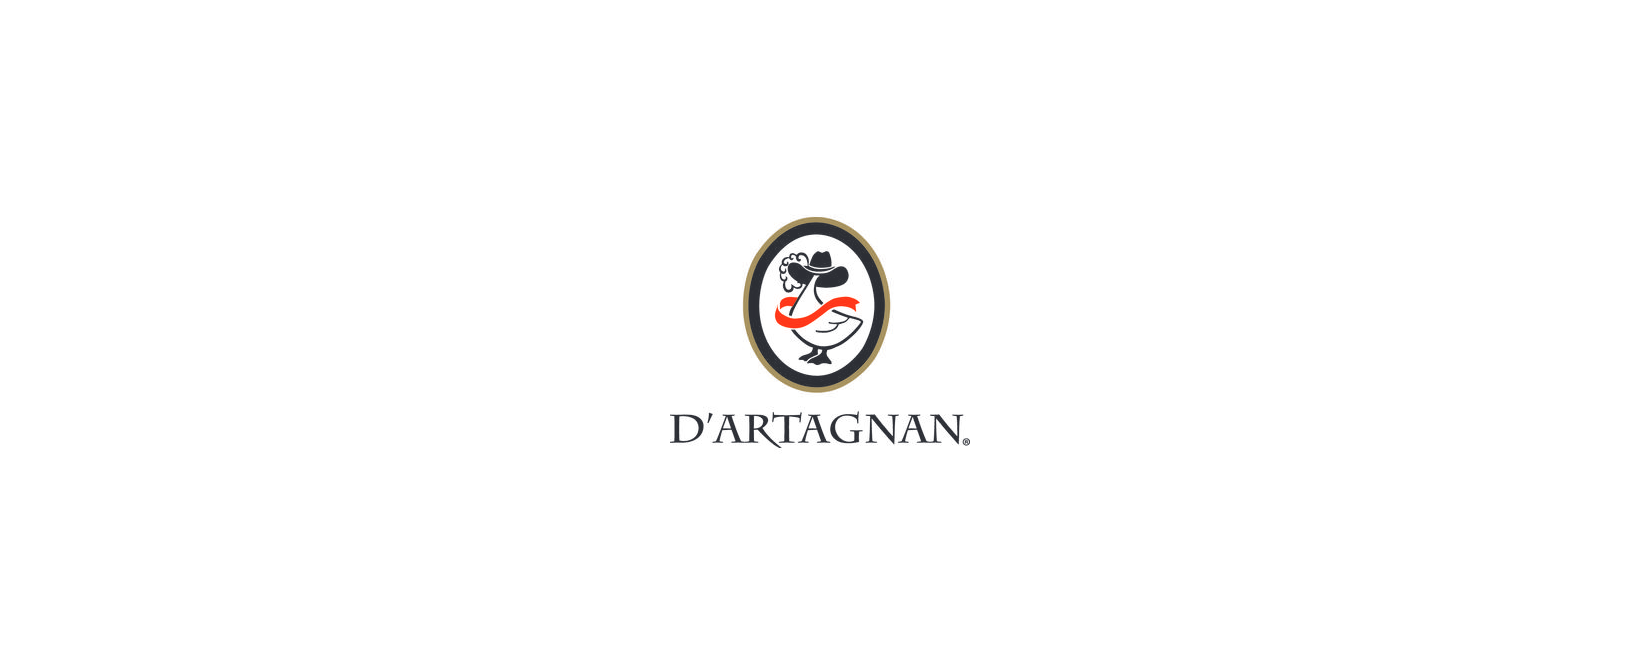 D'Artagnan Coupon Code 2022